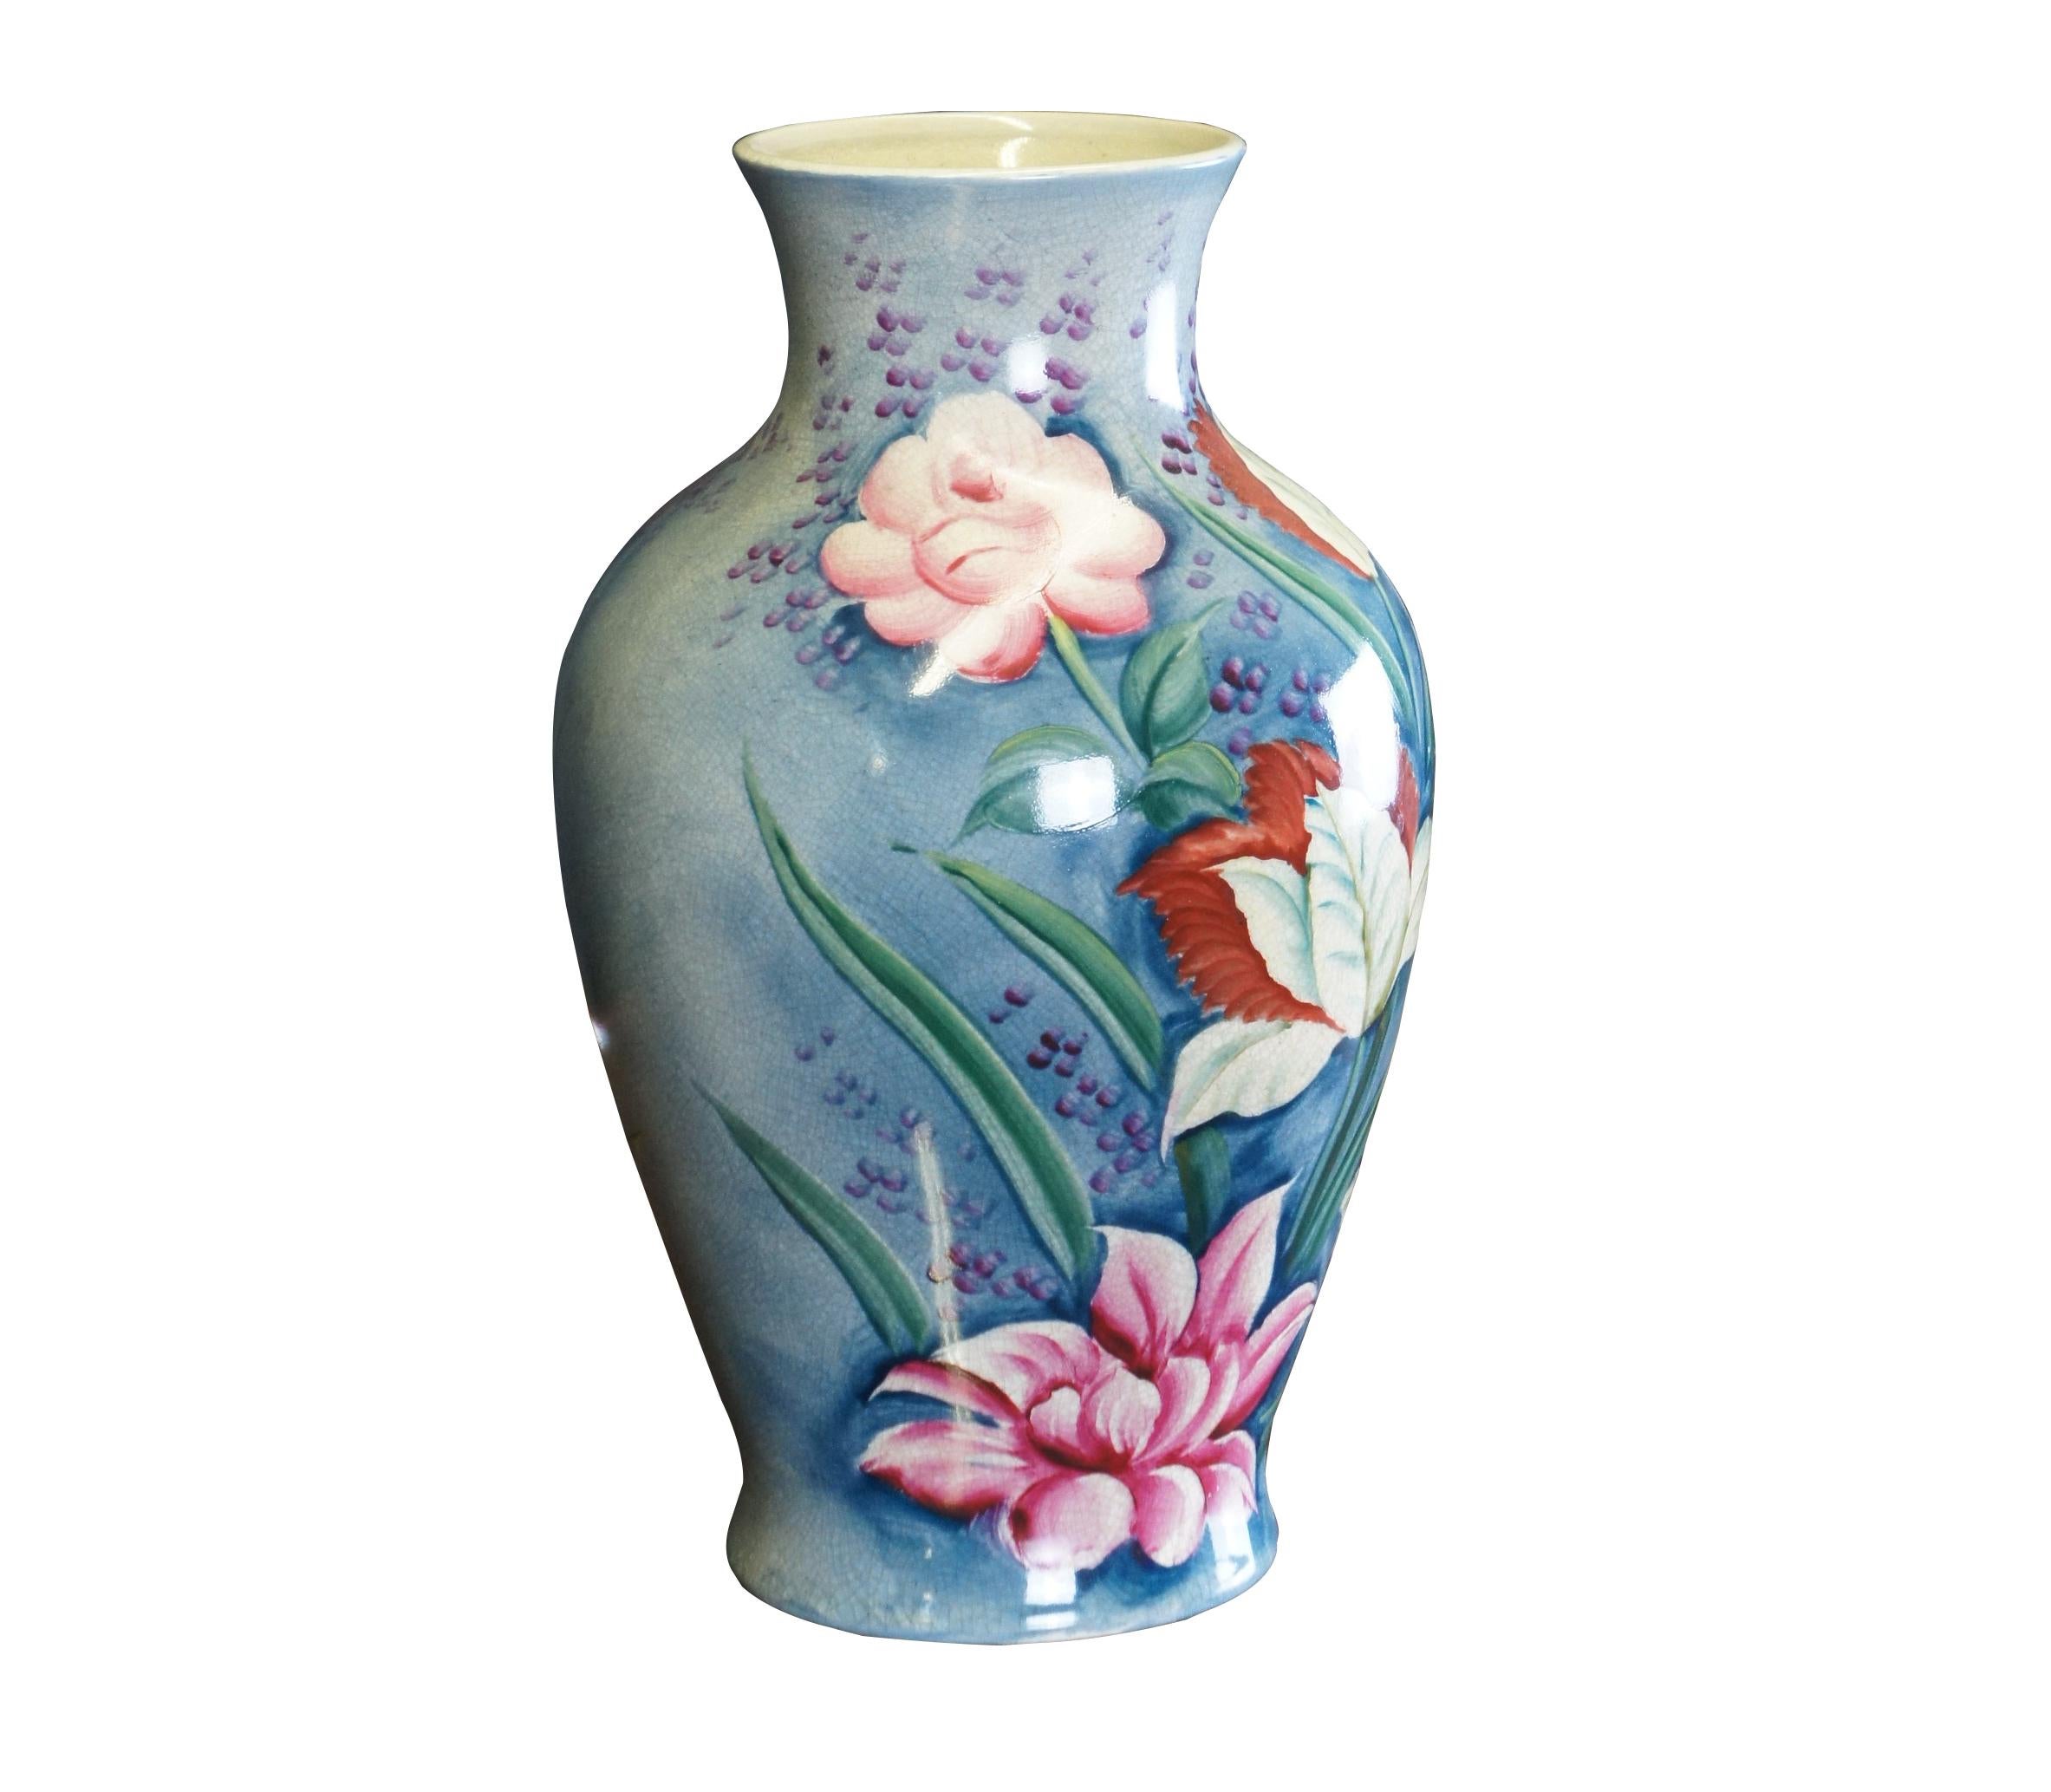 Vintage Frederick Cooper floral flower jar / vase.  Made in Japan.

Dimensions: 
12